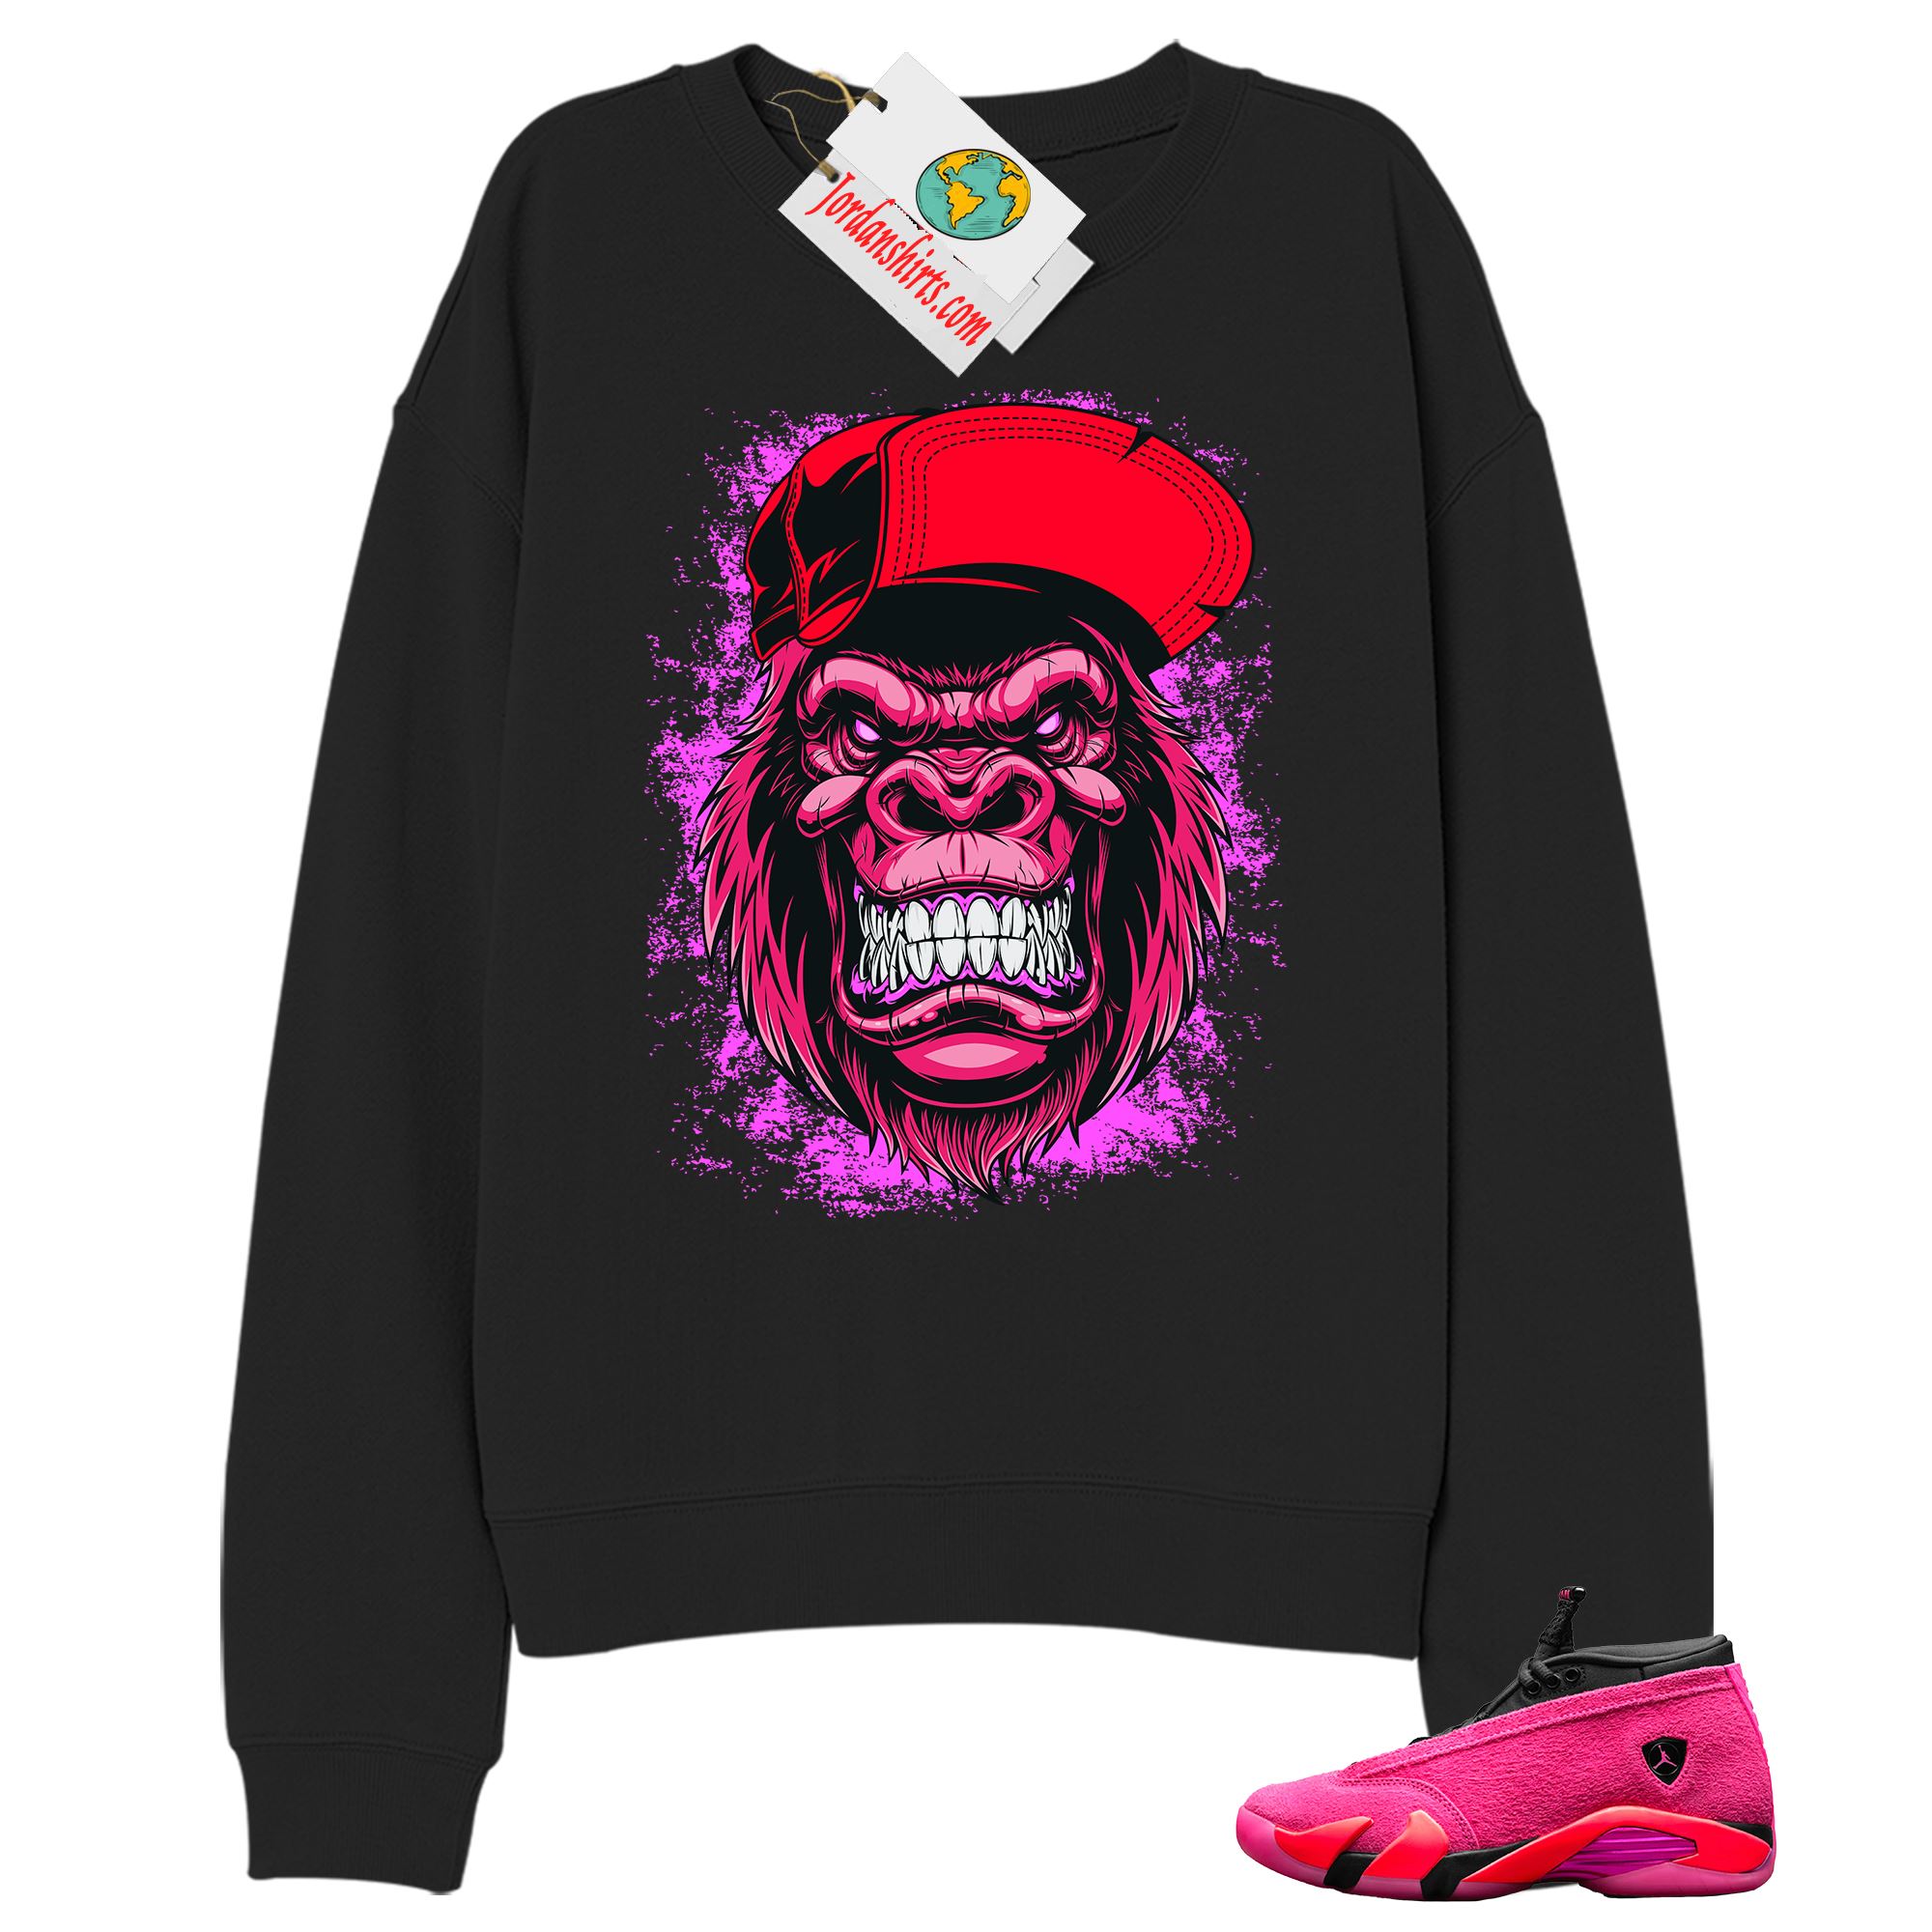 Jordan 14 Sweatshirt, Ferocious Gorilla Black Sweatshirt Air Jordan 14 Wmns Shocking Pink 14s Full Size Up To 5xl